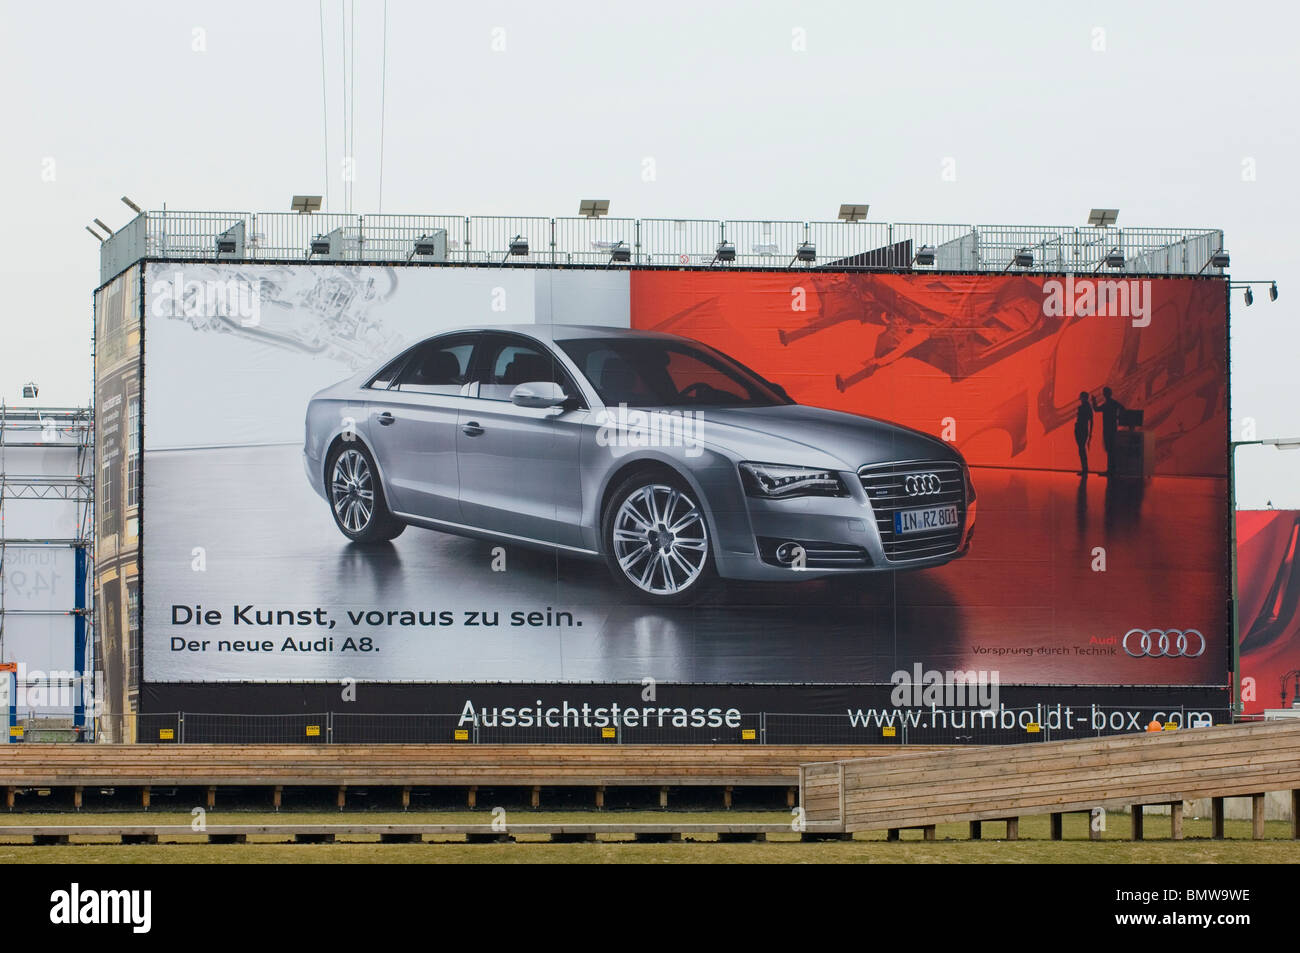 Publicidad el nuevo Audi A8 en billboard Berlín ALEMANIA Foto de stock